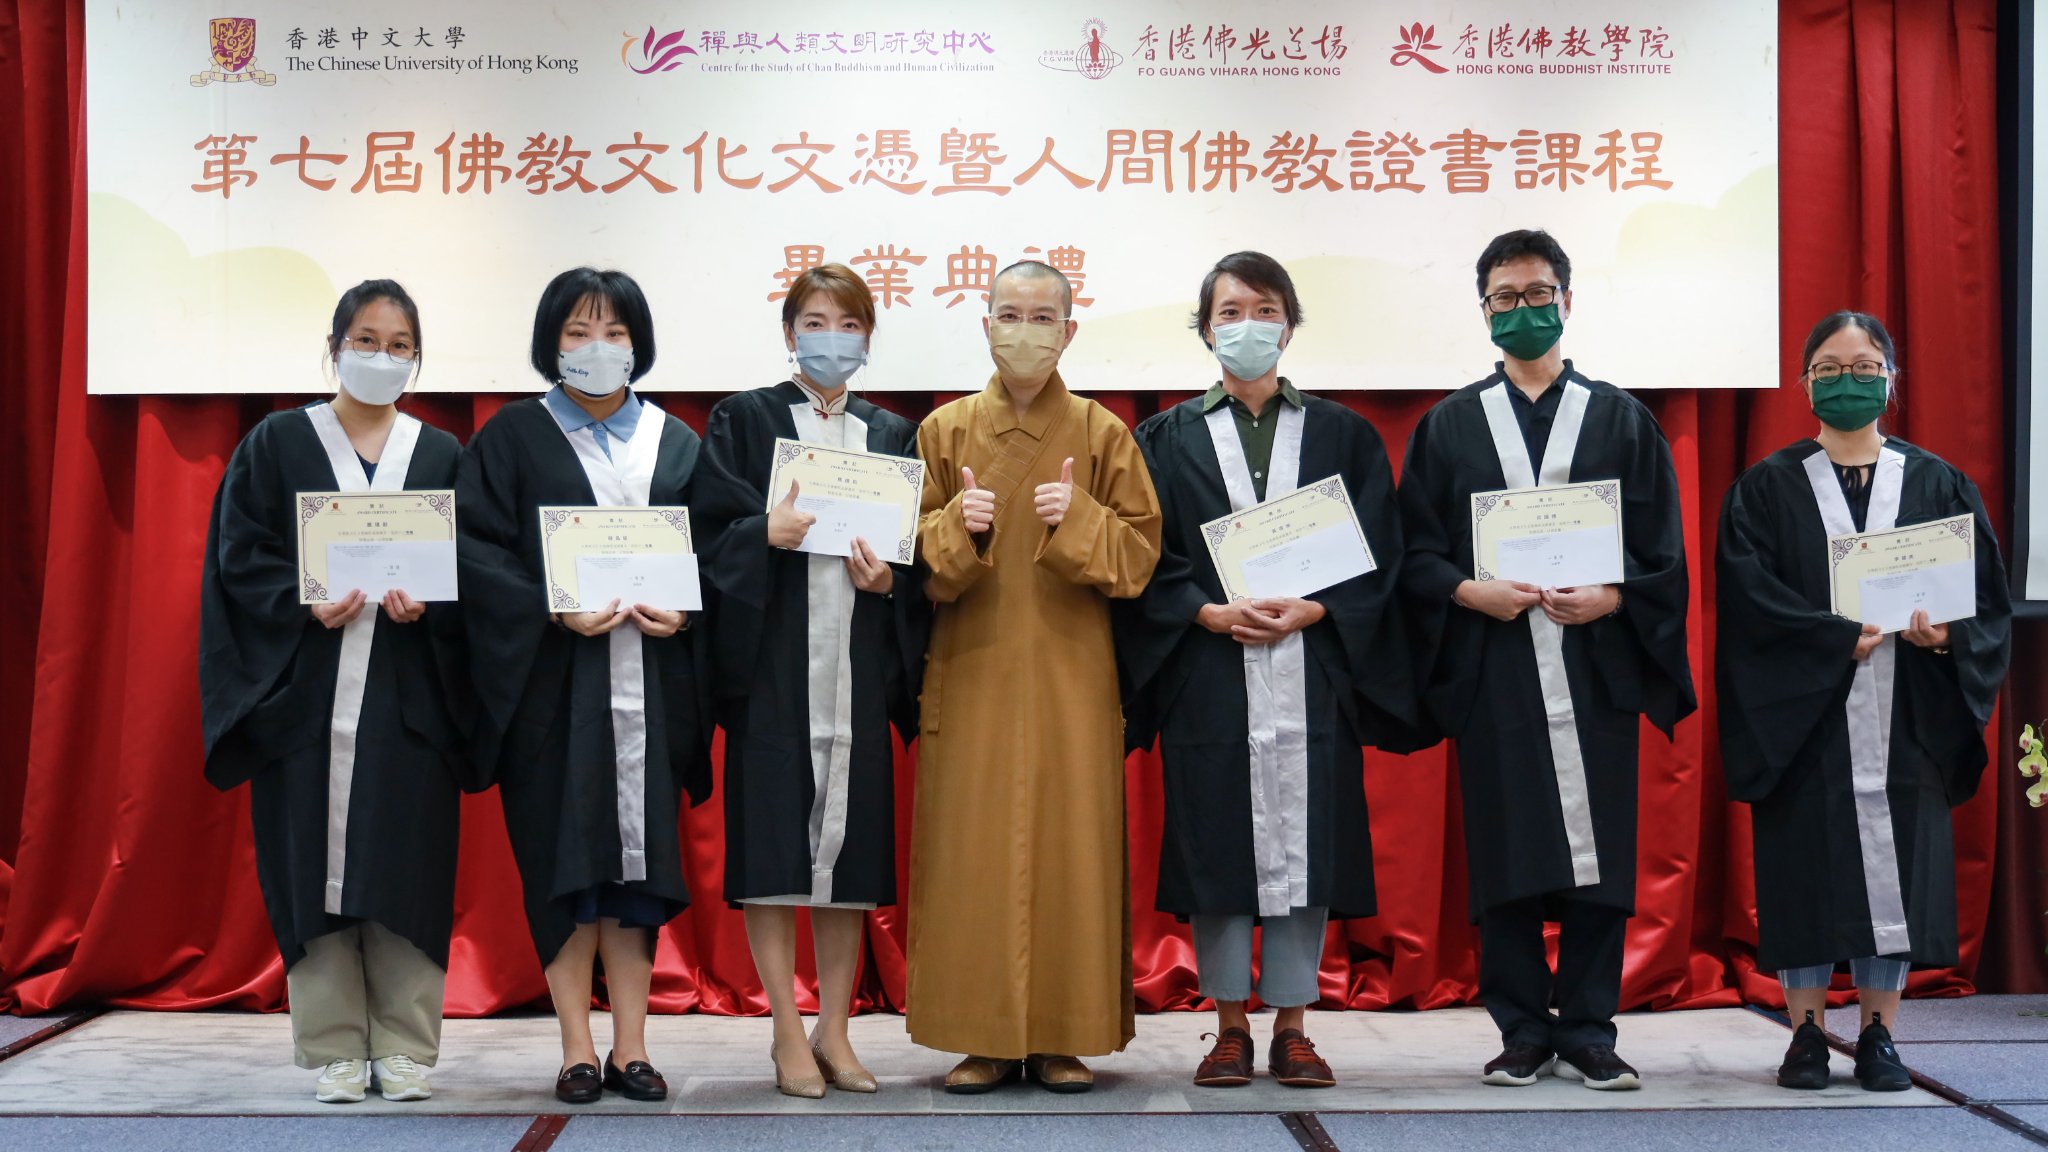 永富法師頒發佛教文化文憑一等獎獎學金給表現優異畢業生。